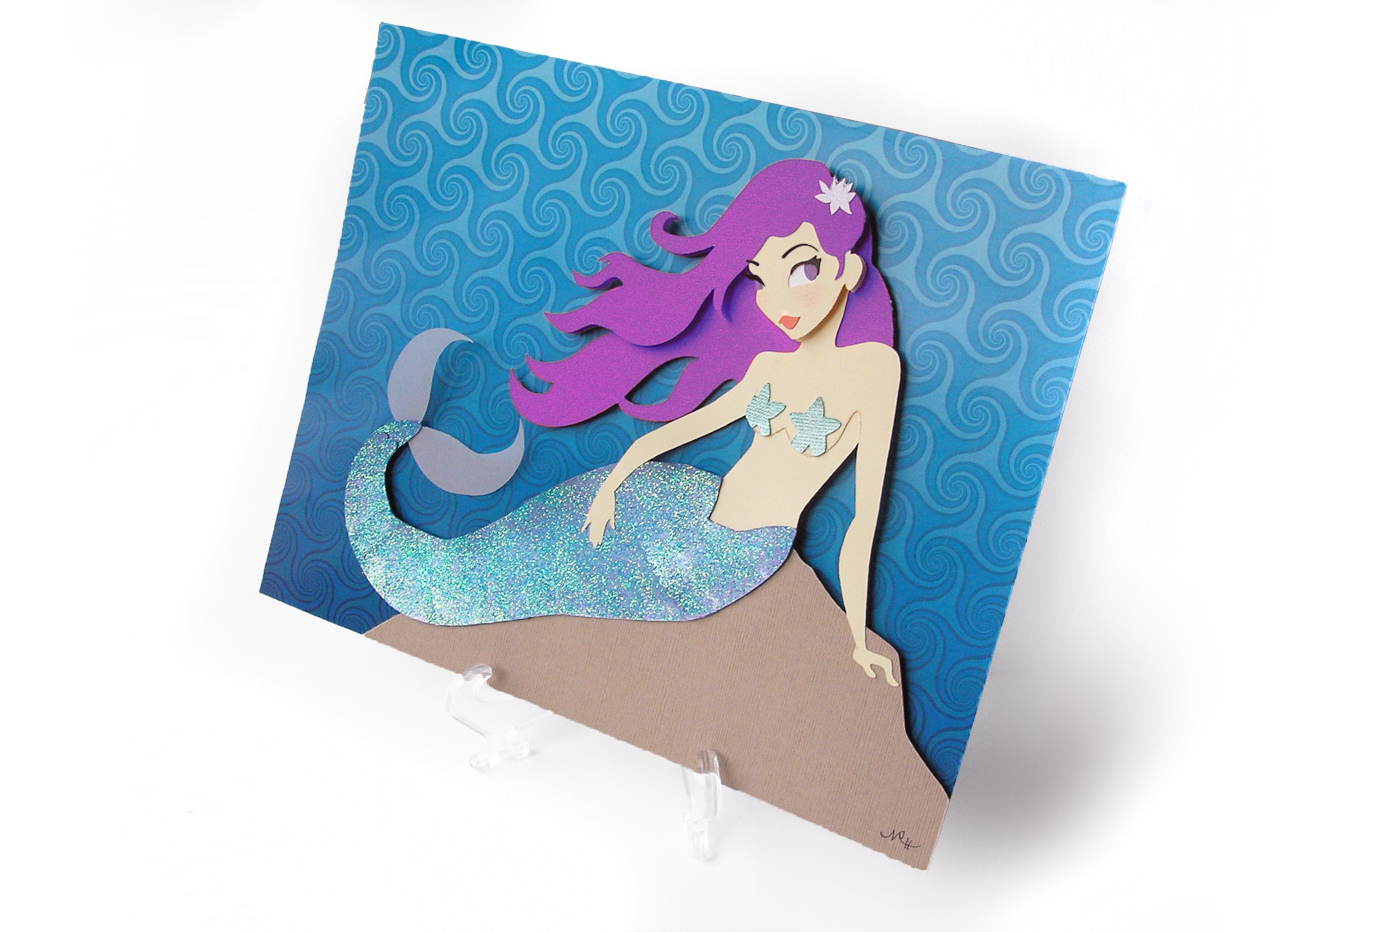 Paper layered mermaid art